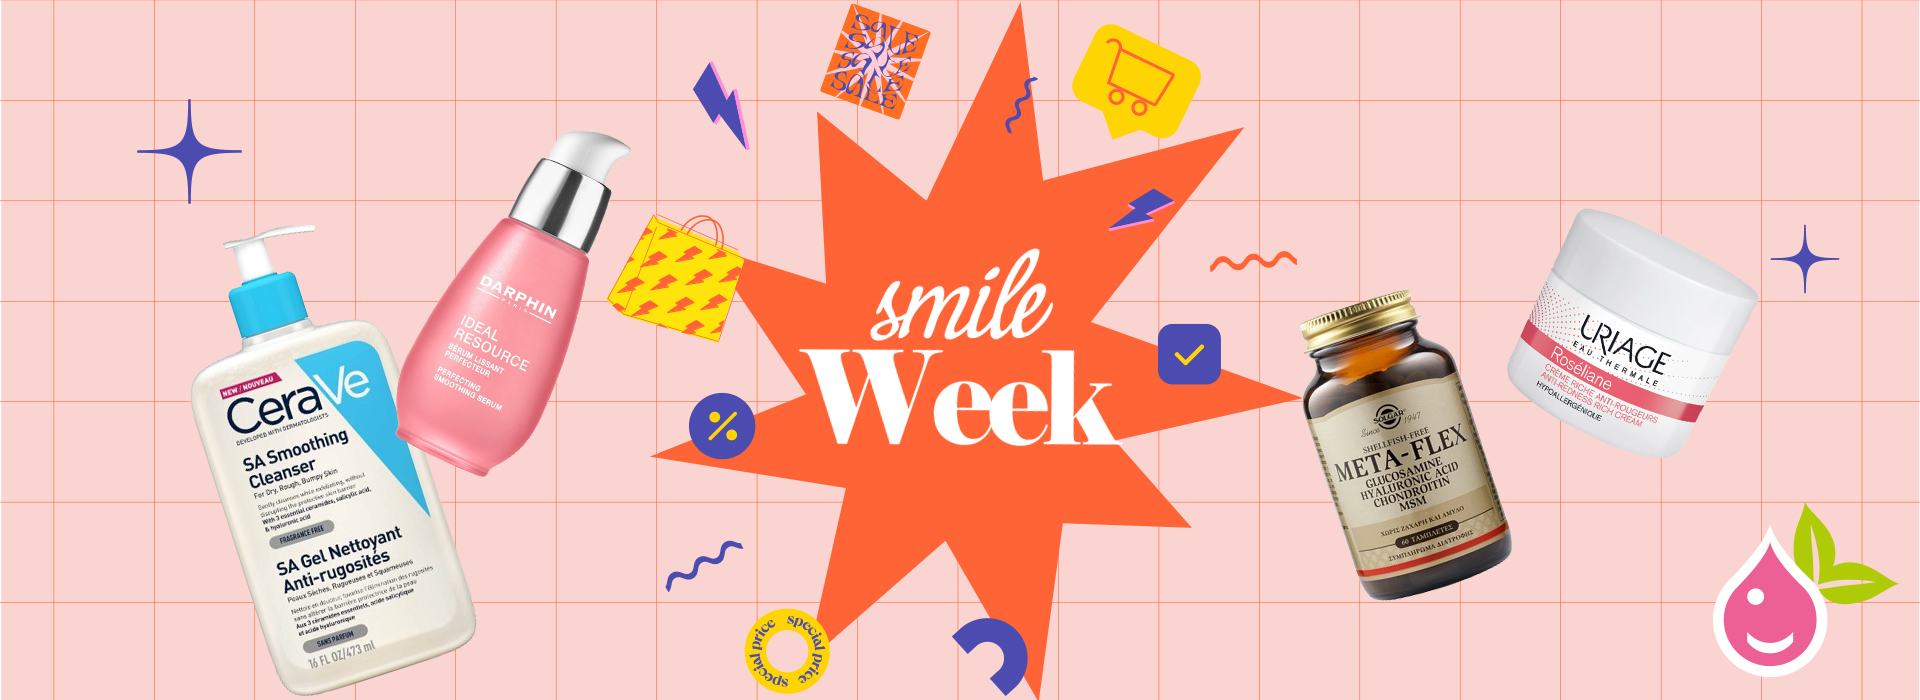 Smile Week